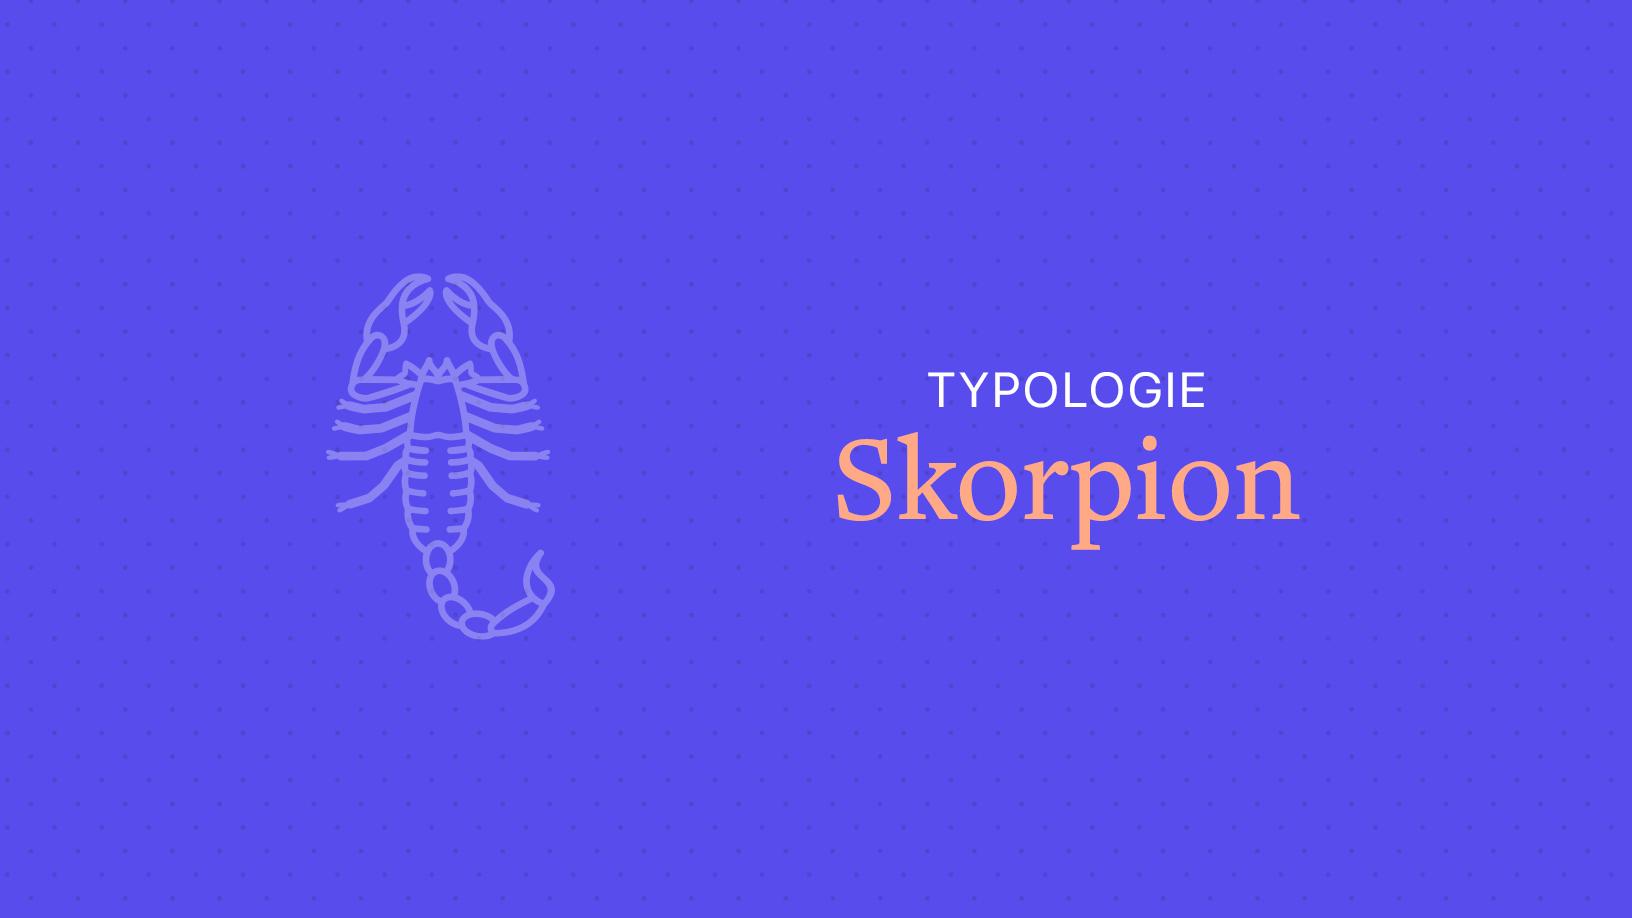 Der Skorpion-Mann